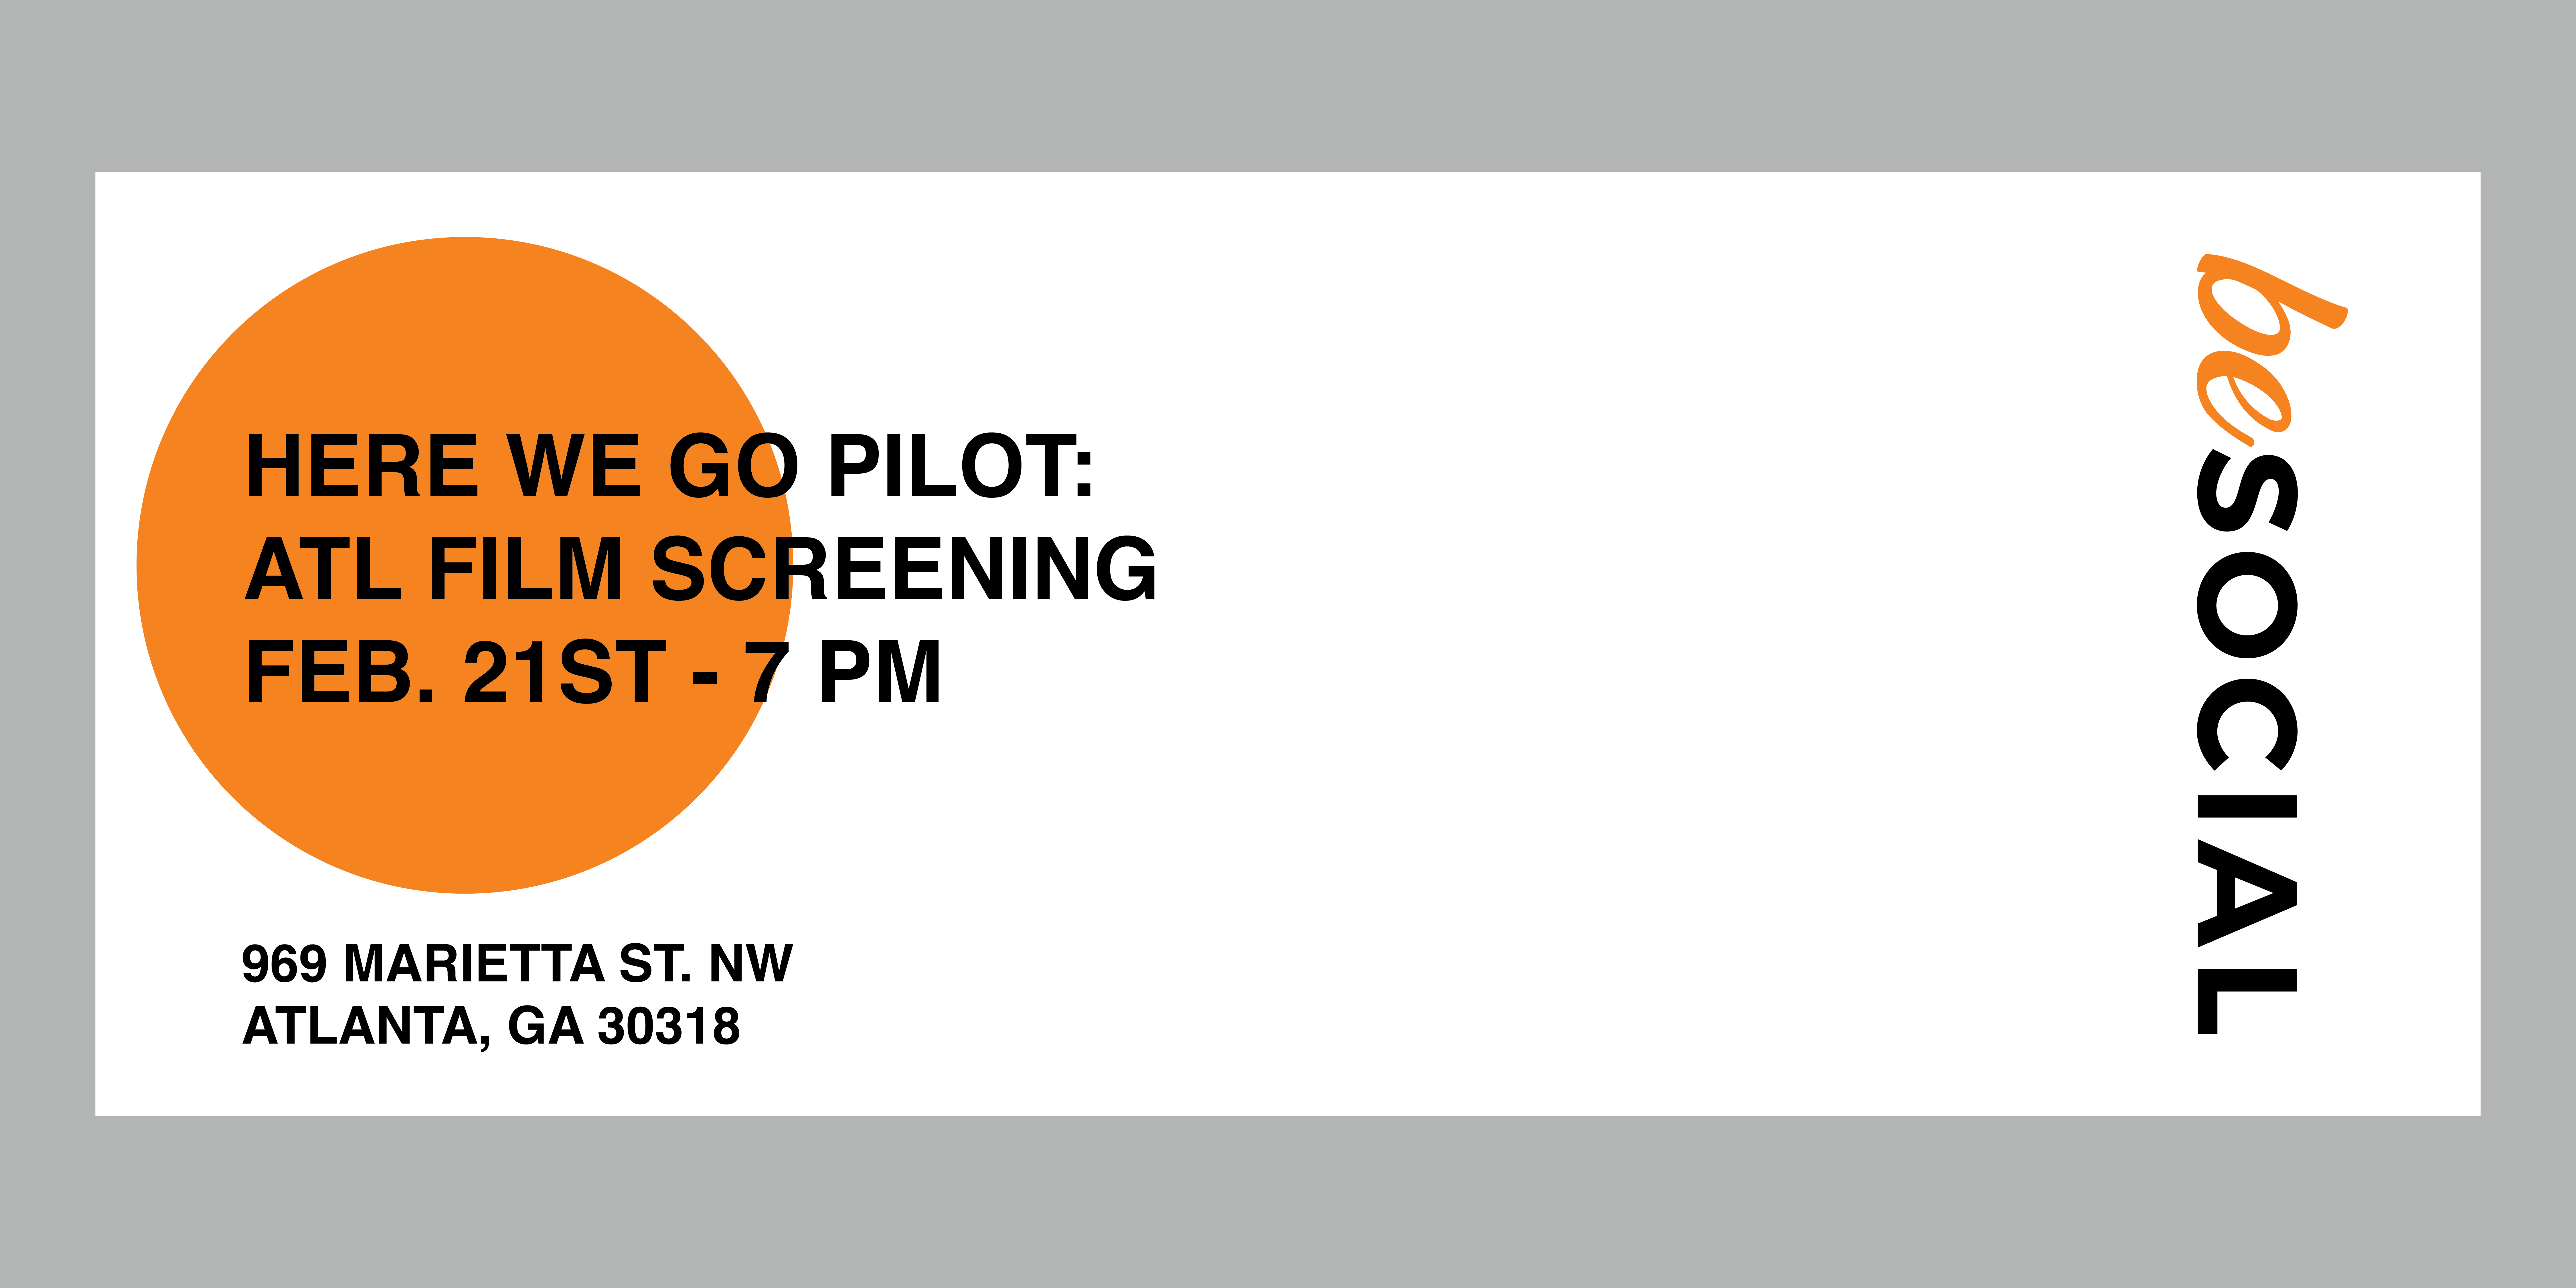 HERE WE GO PILOT: ATL FILM SCREENING